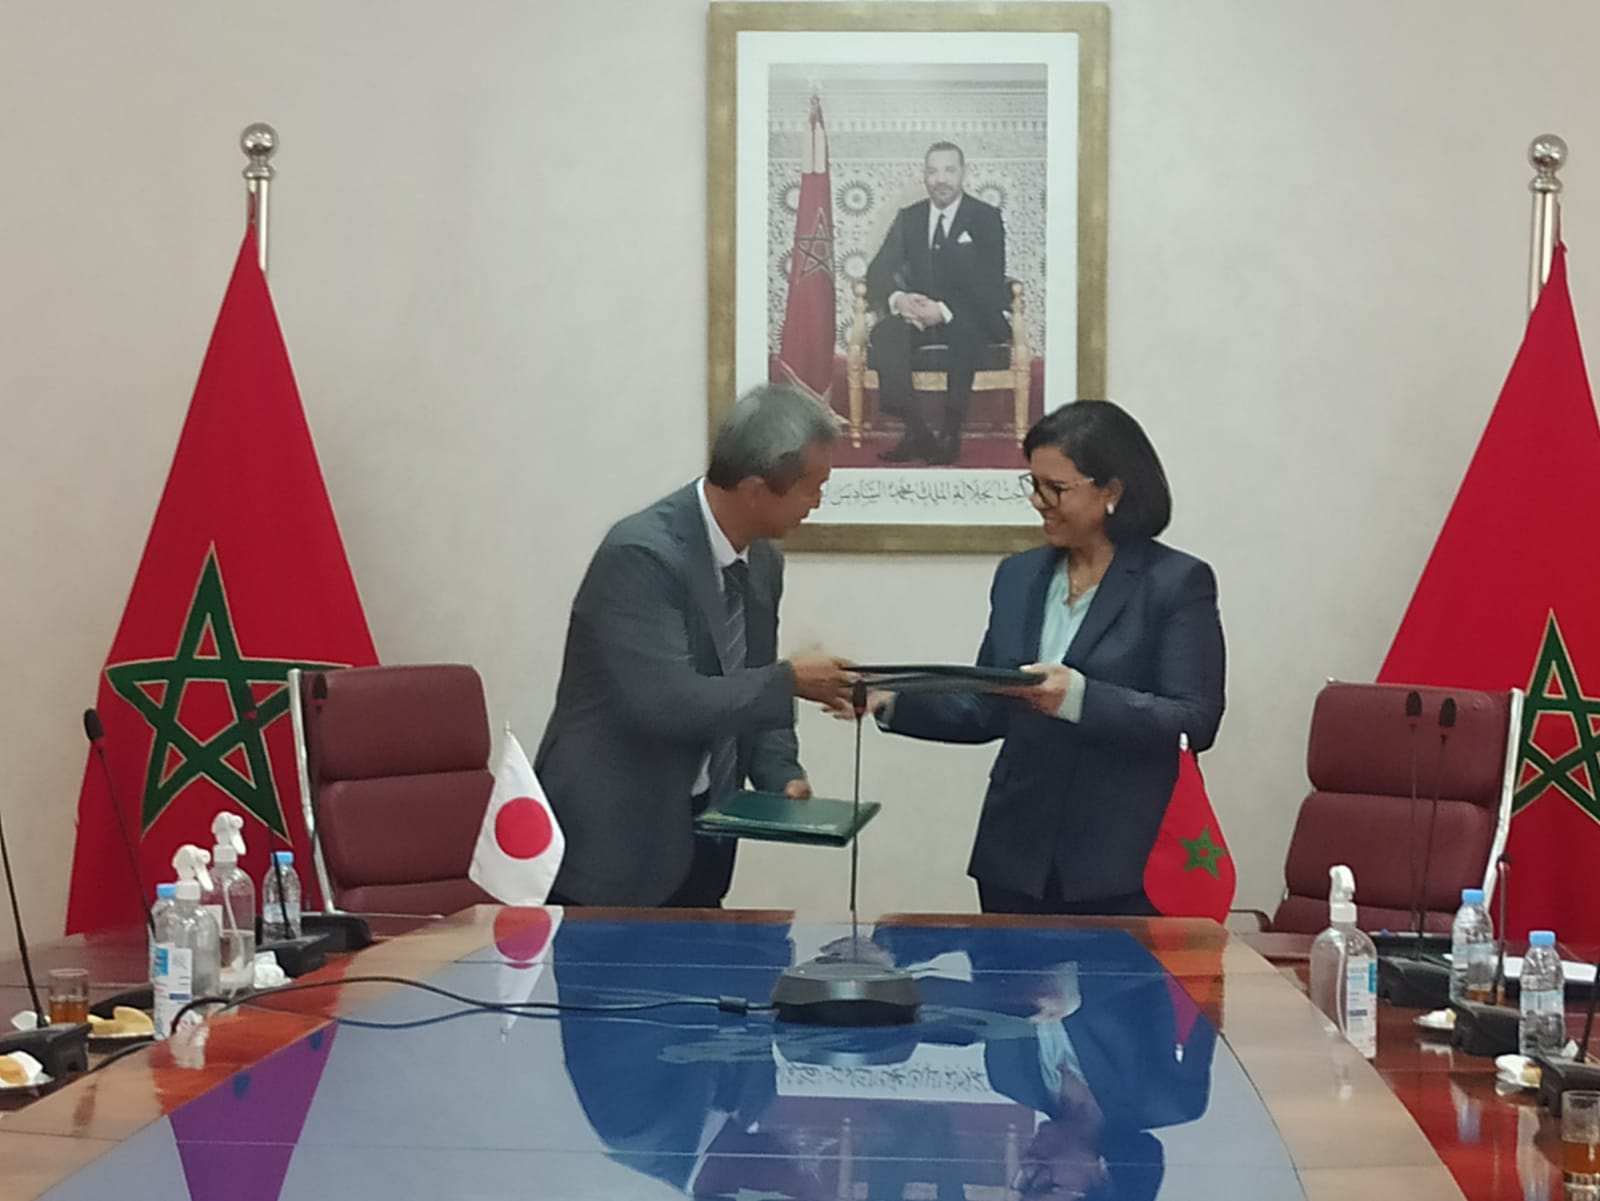 اتفاقية ثنائية بين المغرب واليابان لتطوير الجيل الجديد من قرية الصيادين بالصويرية القديمة